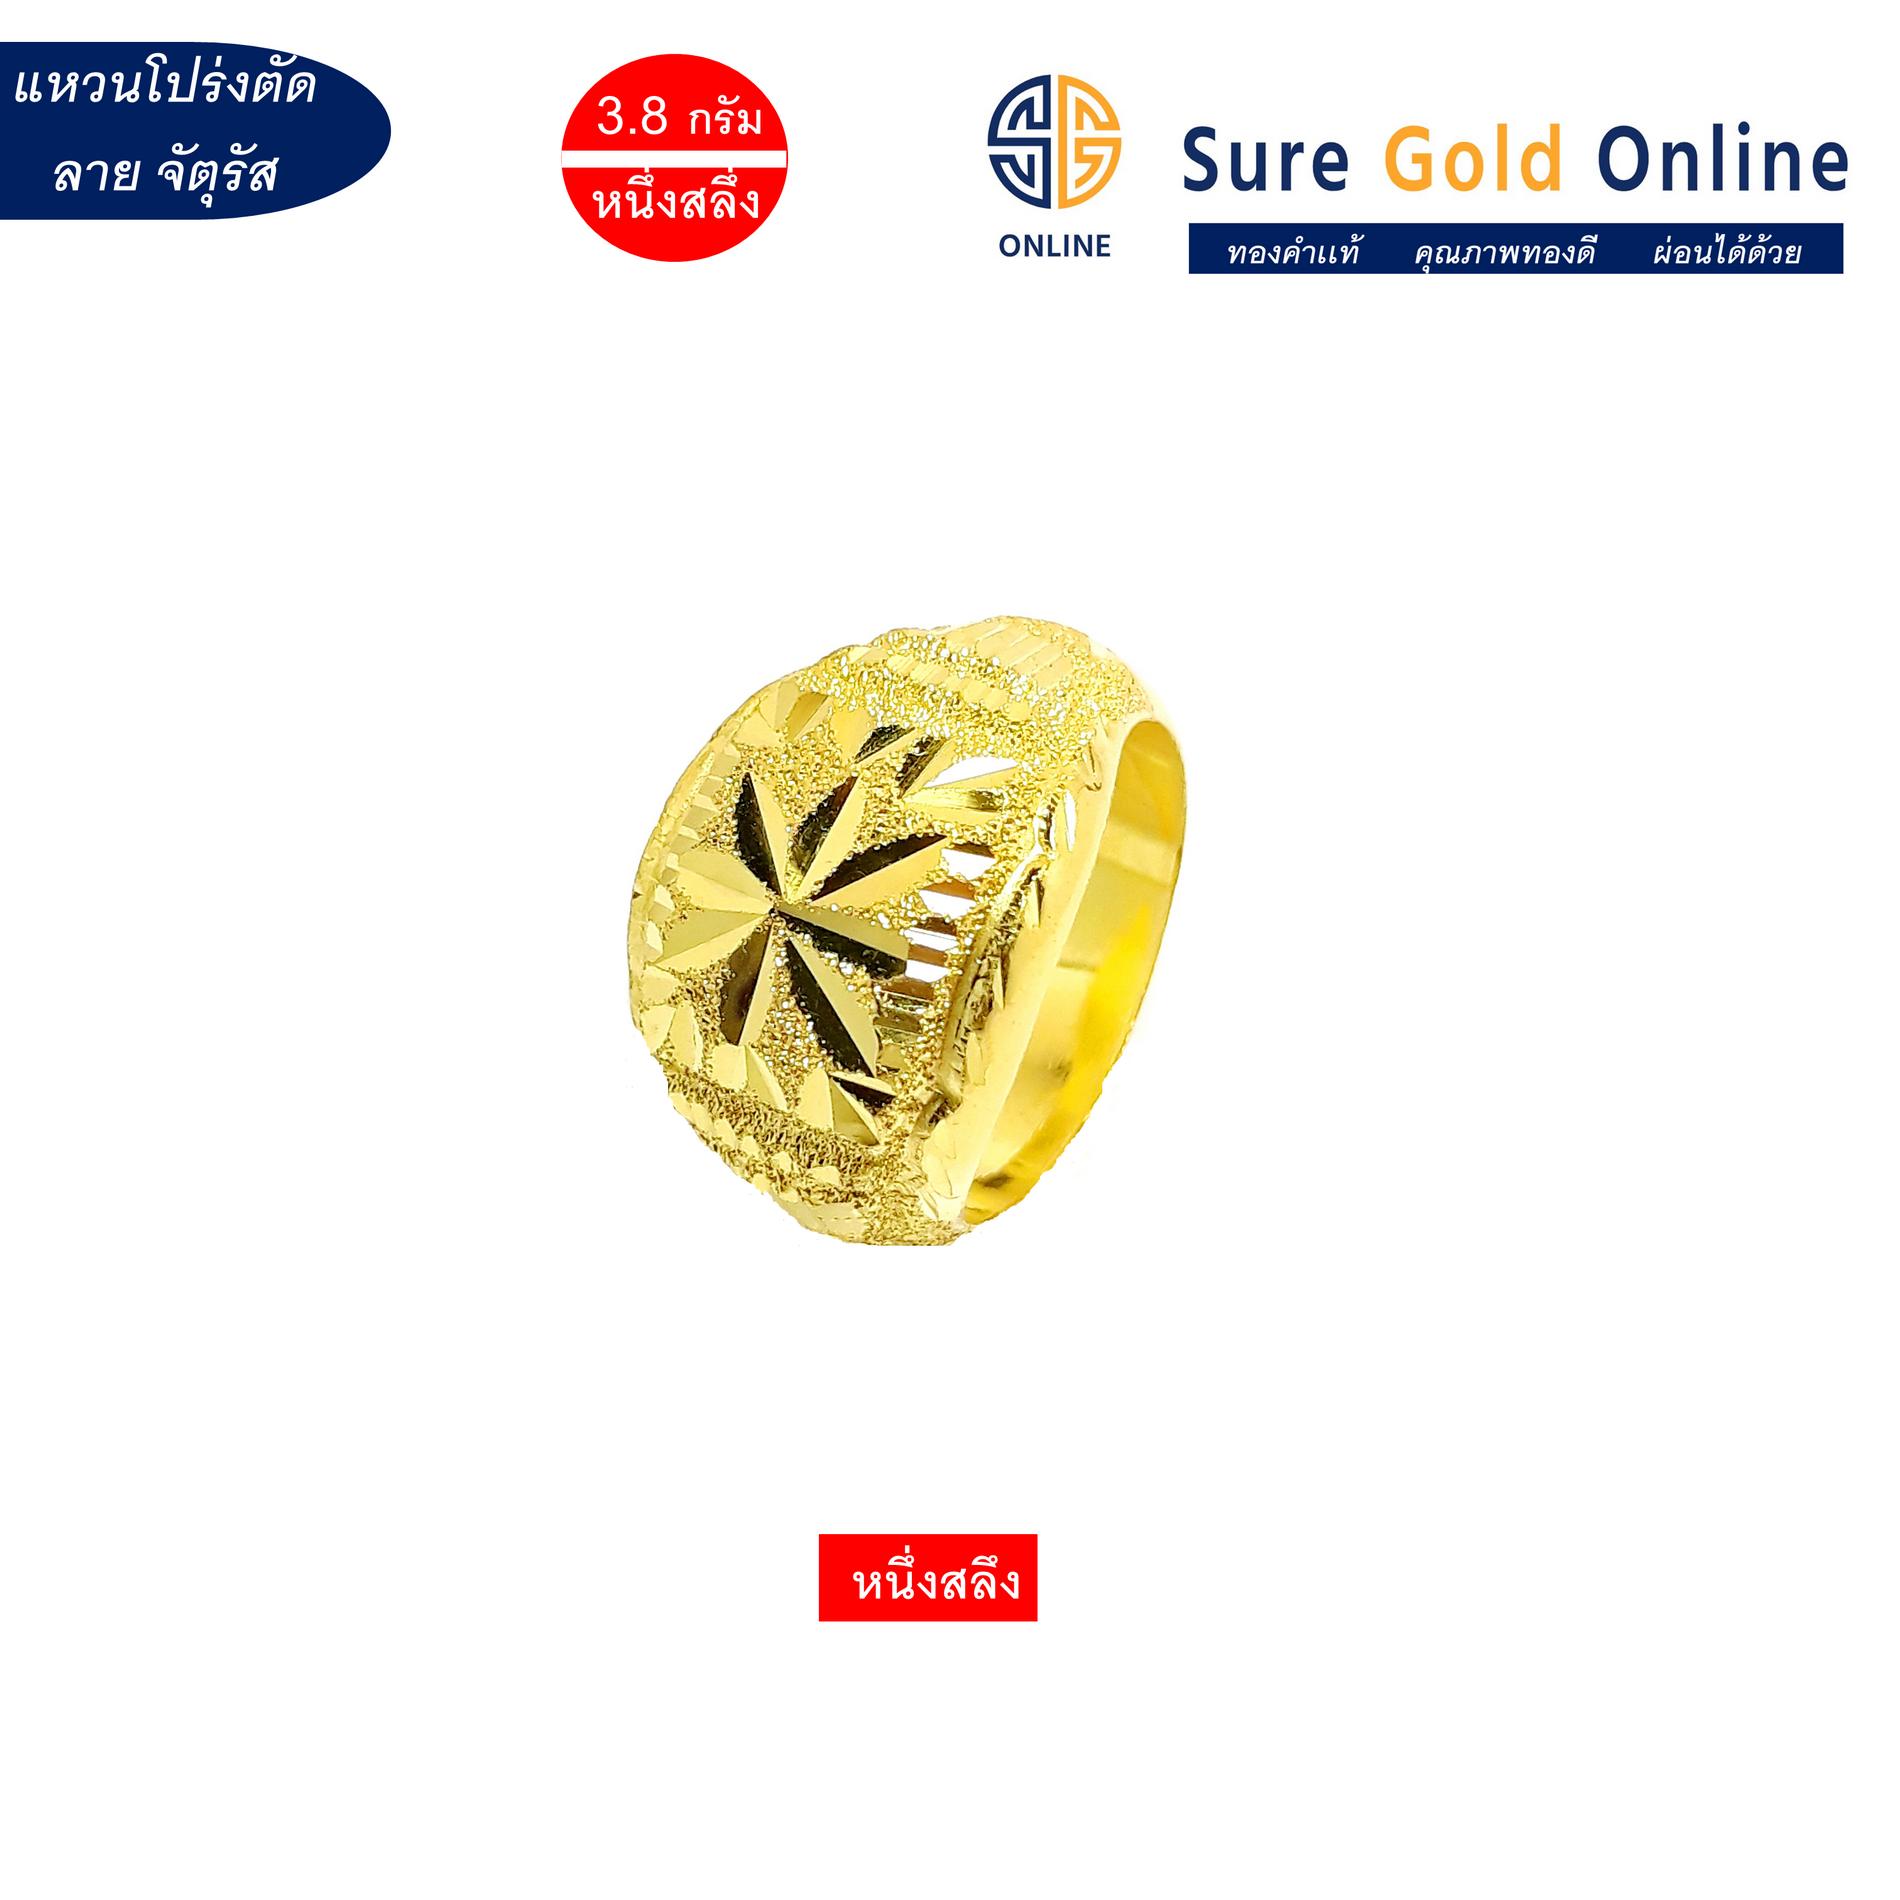 เเหวนทองคำเเท้ 96.5% น้ำหนัก 3.8 กรัม(หนึ่งสลึง) เเหวนโปร่งตัดลายสี่เหลี่ยมจัตุรัส Gold jewelry 96.5 % Weight 3.8 G  Square in sand ring. suregoldonline